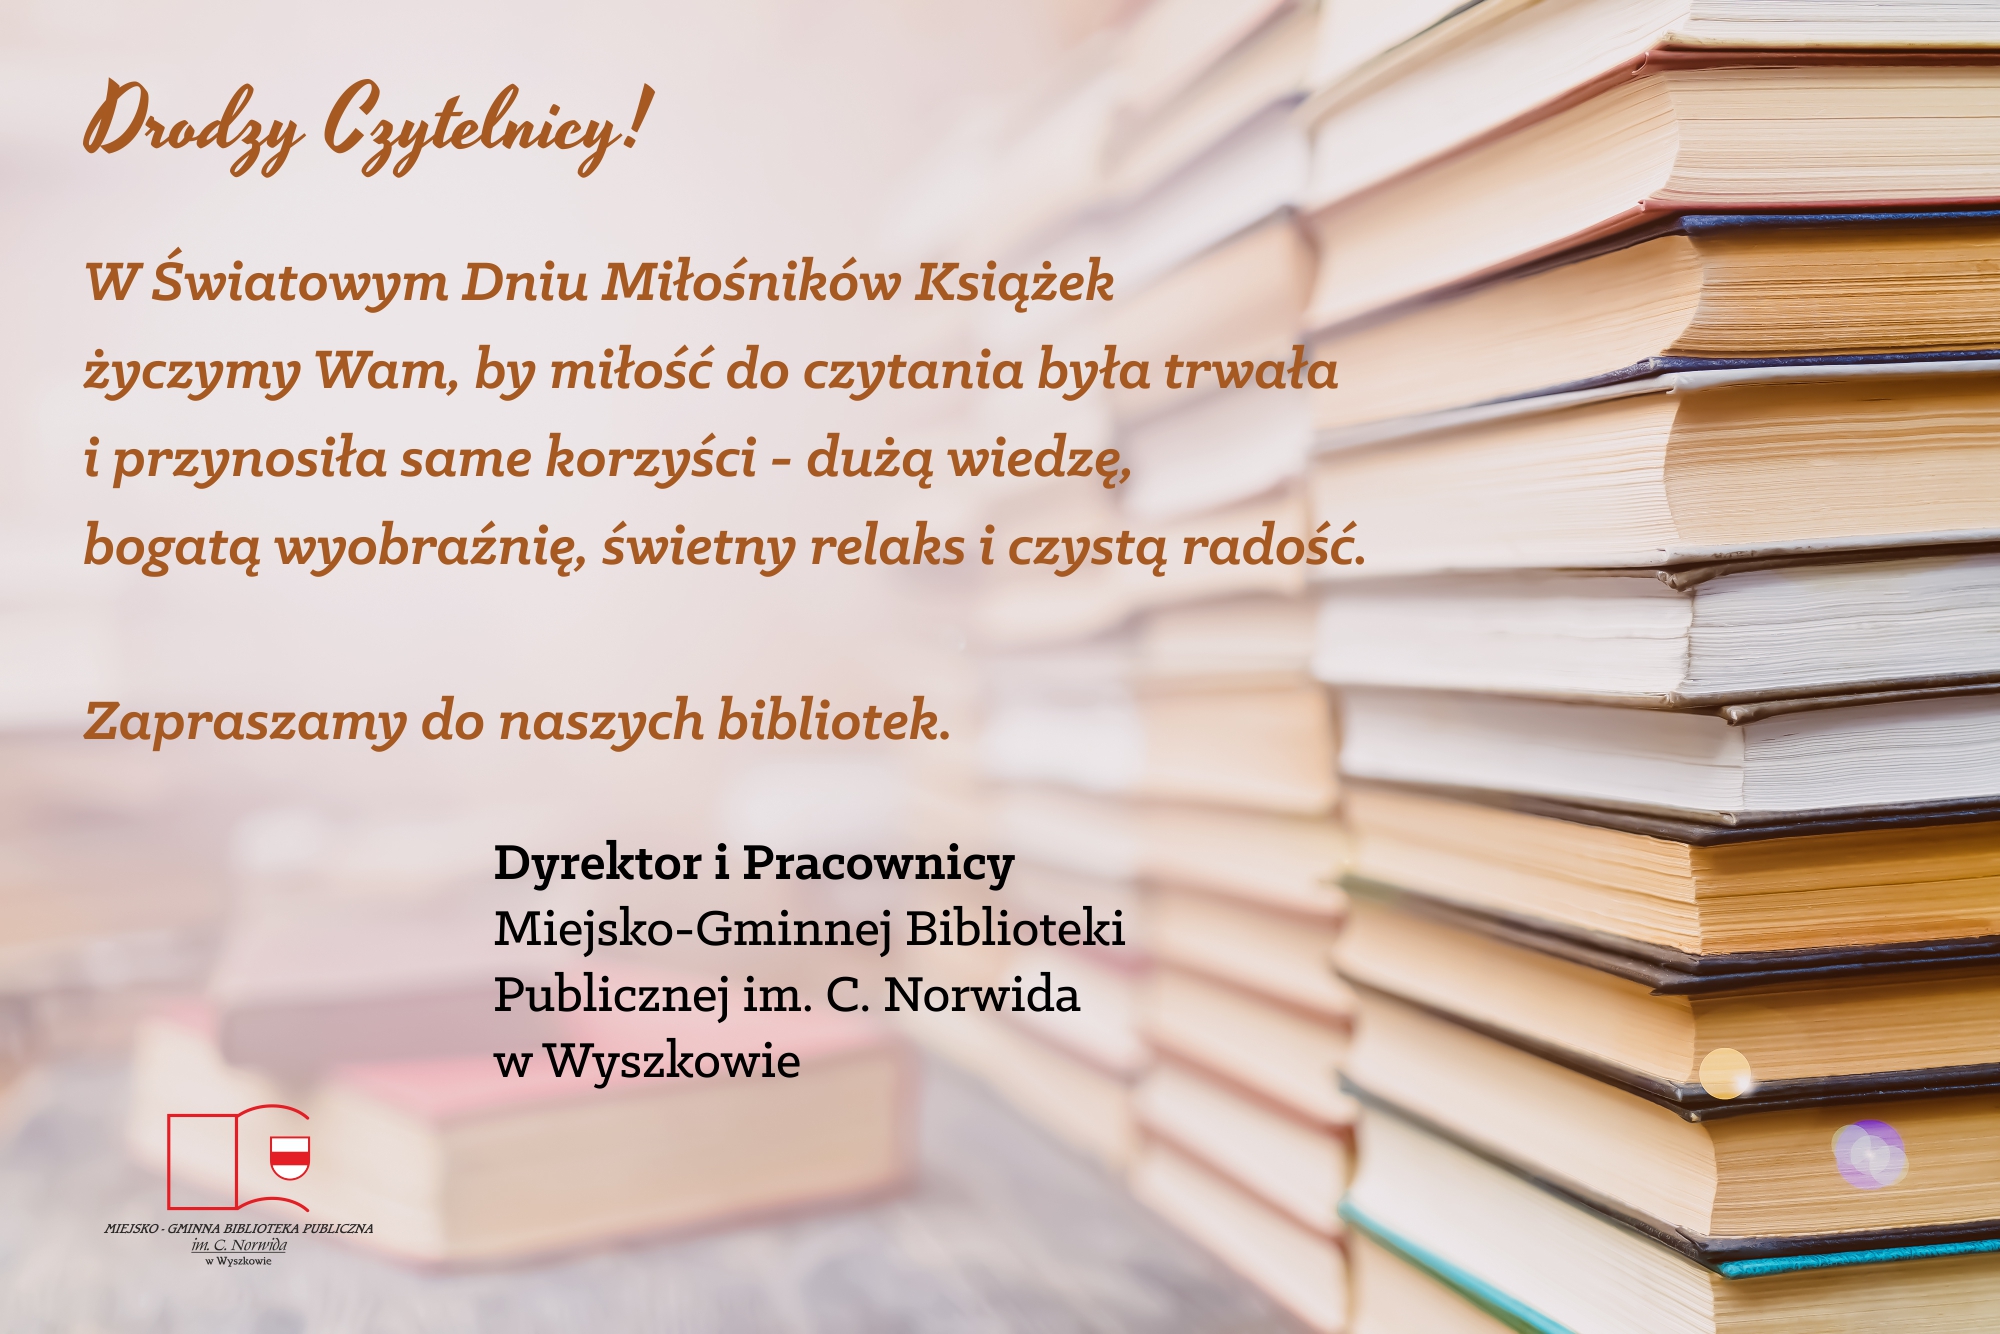 Drodzy Czytelnicy! W Światowym Dniu Miłośników Książek życzymy Wam, by miłość do czytania była trwała i przynosiła same korzyści - dużą wiedzę, bogatą wyobraźnię, świetny relaks i czystą radość. Zapraszamy do naszych bibliotek.  Dyrektor i Pracownicy Miejsko-Gminnej Biblioteki Publicznej im. C. Norwida w Wyszkowie